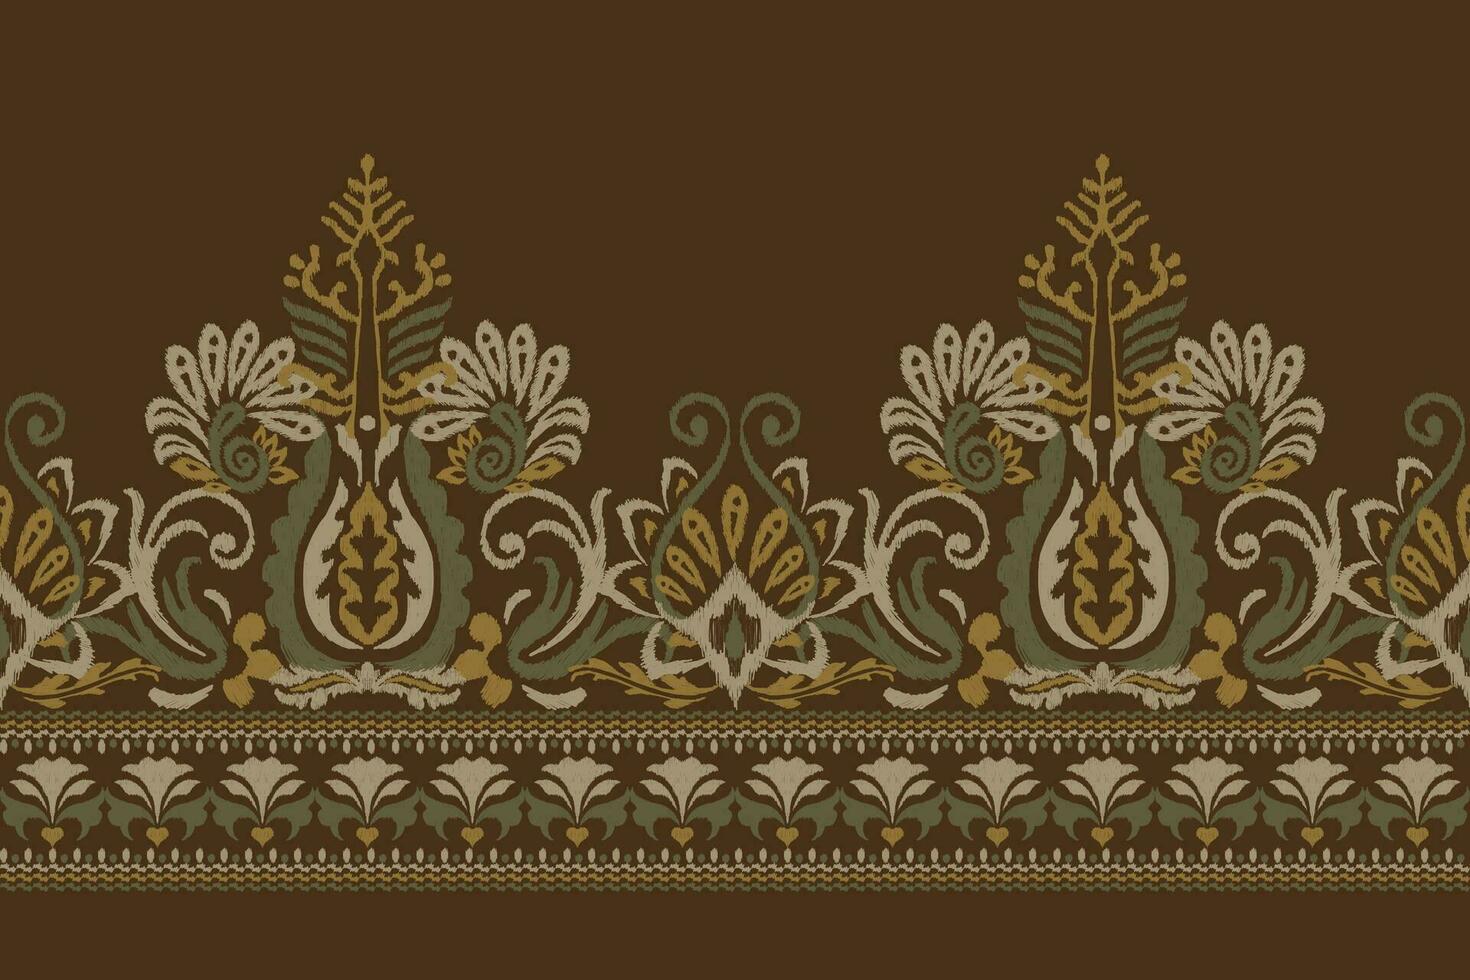 Indisch ikat bloemen paisley borduurwerk.ikat etnisch oosters patroon traditioneel.azteken stijl abstract vector illustratie.ontwerp voor textuur, stof, kleding, verpakking, decoratie, sarong, sjaal, placemat.